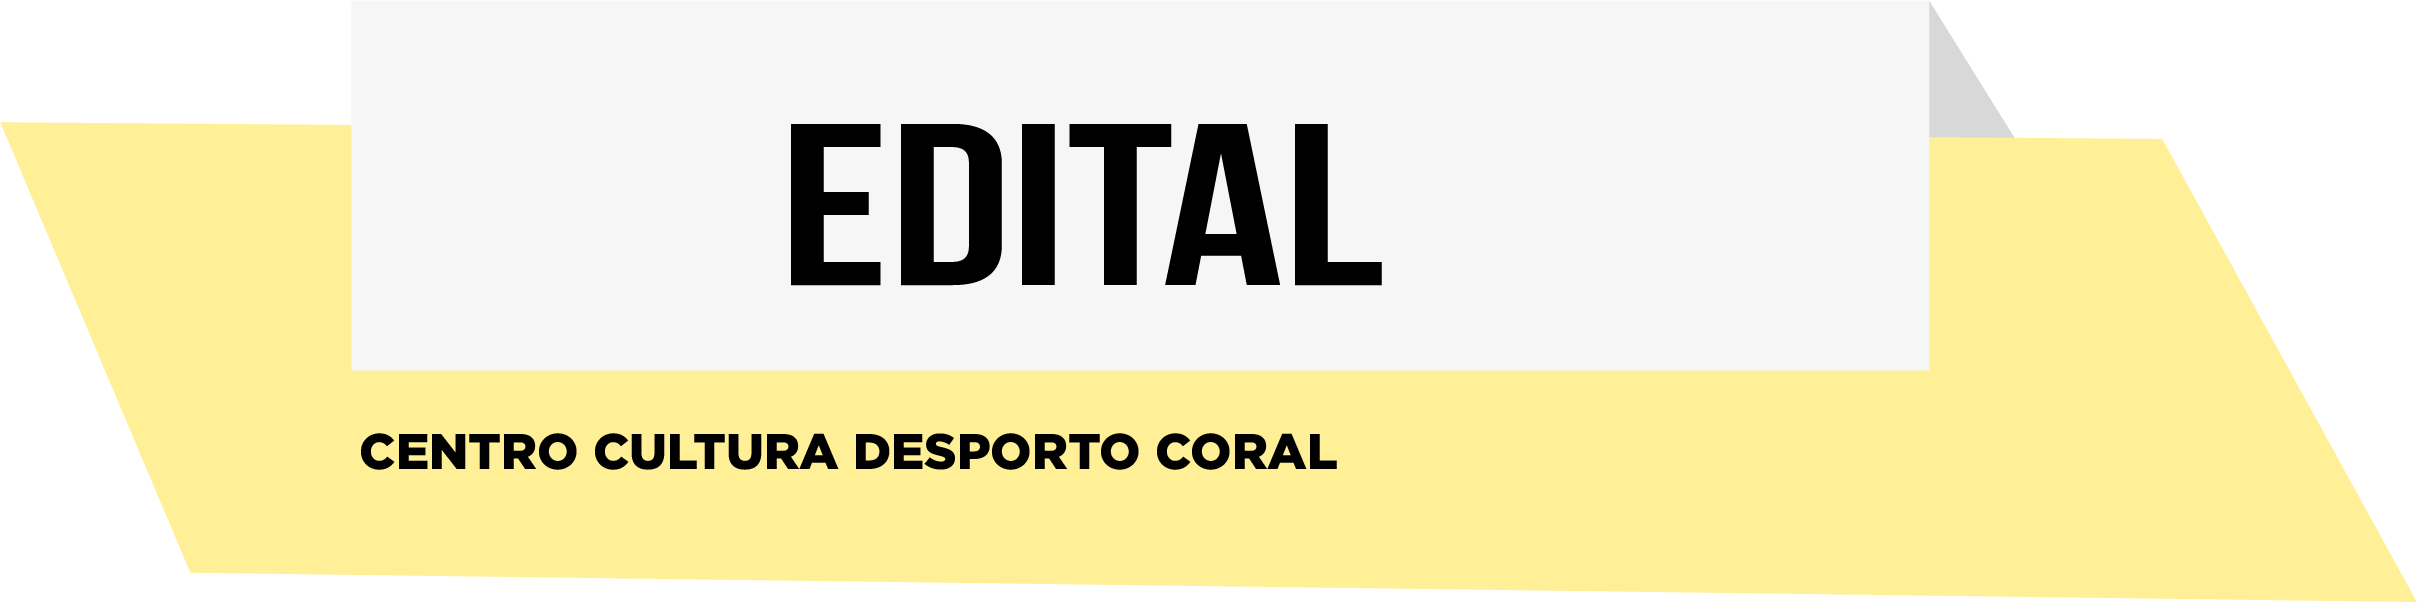 EDITAL- Centro Cultura Desporto Coral